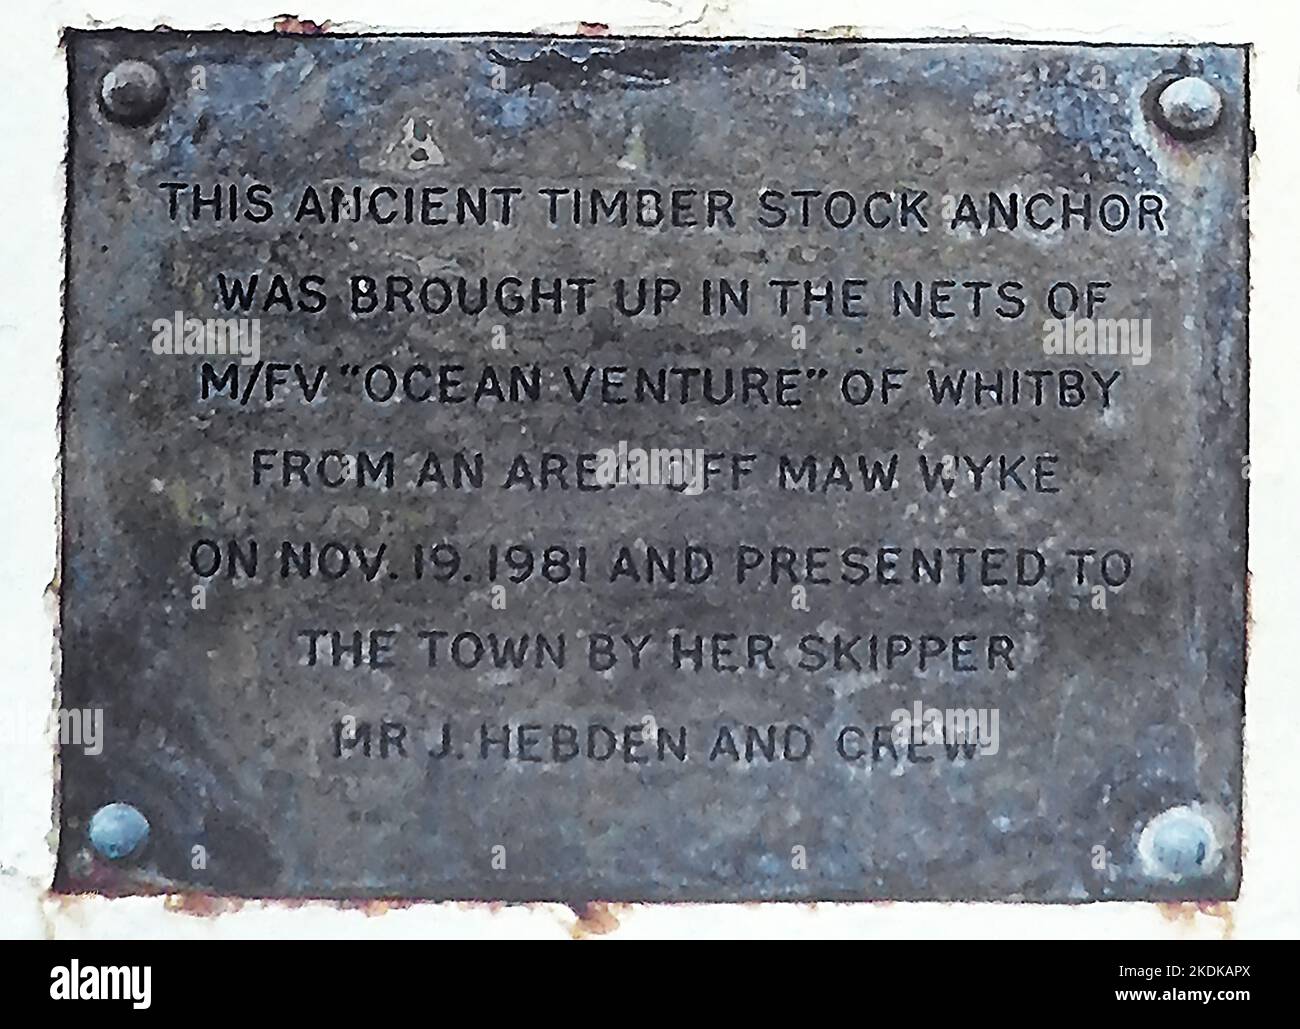 Plaque sur Tate Hill Pier, Whitby, Yorkshire à côté d'une ancre. ' Cette ancienne ancre de bois a été montée dans les filets de l'Ocean Venture de Whitby d'une région au large de Maw Wyke le 19th novembre 1981 et présentée à la ville par son skipper M. J. Hebden et son équipage. Banque D'Images